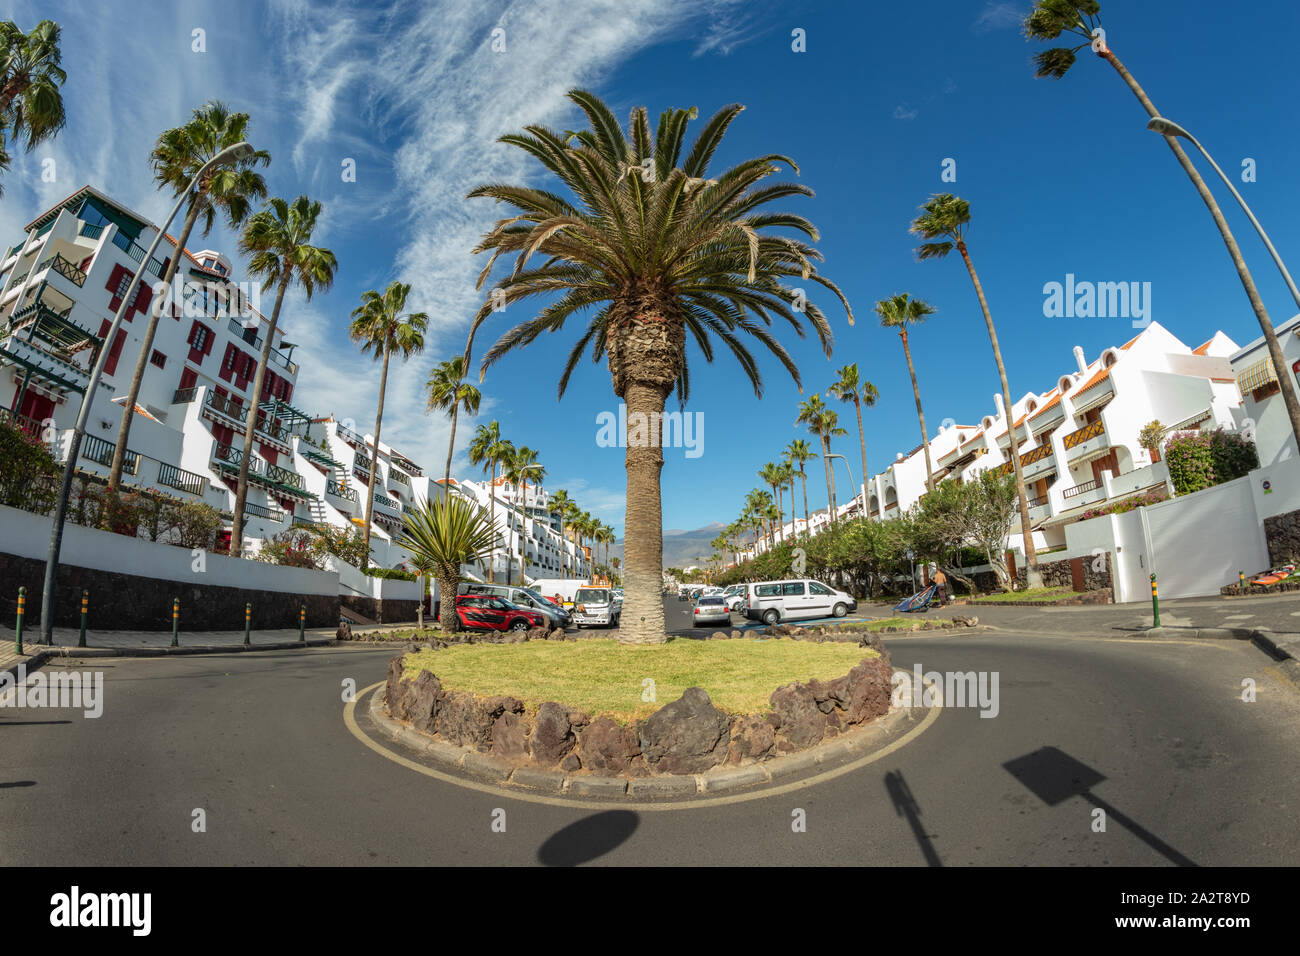 Rotonda con canarian Palm tree nel centro del villaggio turistico di Playa de las Americas. Super grandangolo vista panoramica. Chiara giornata soleggiata con ve Foto Stock